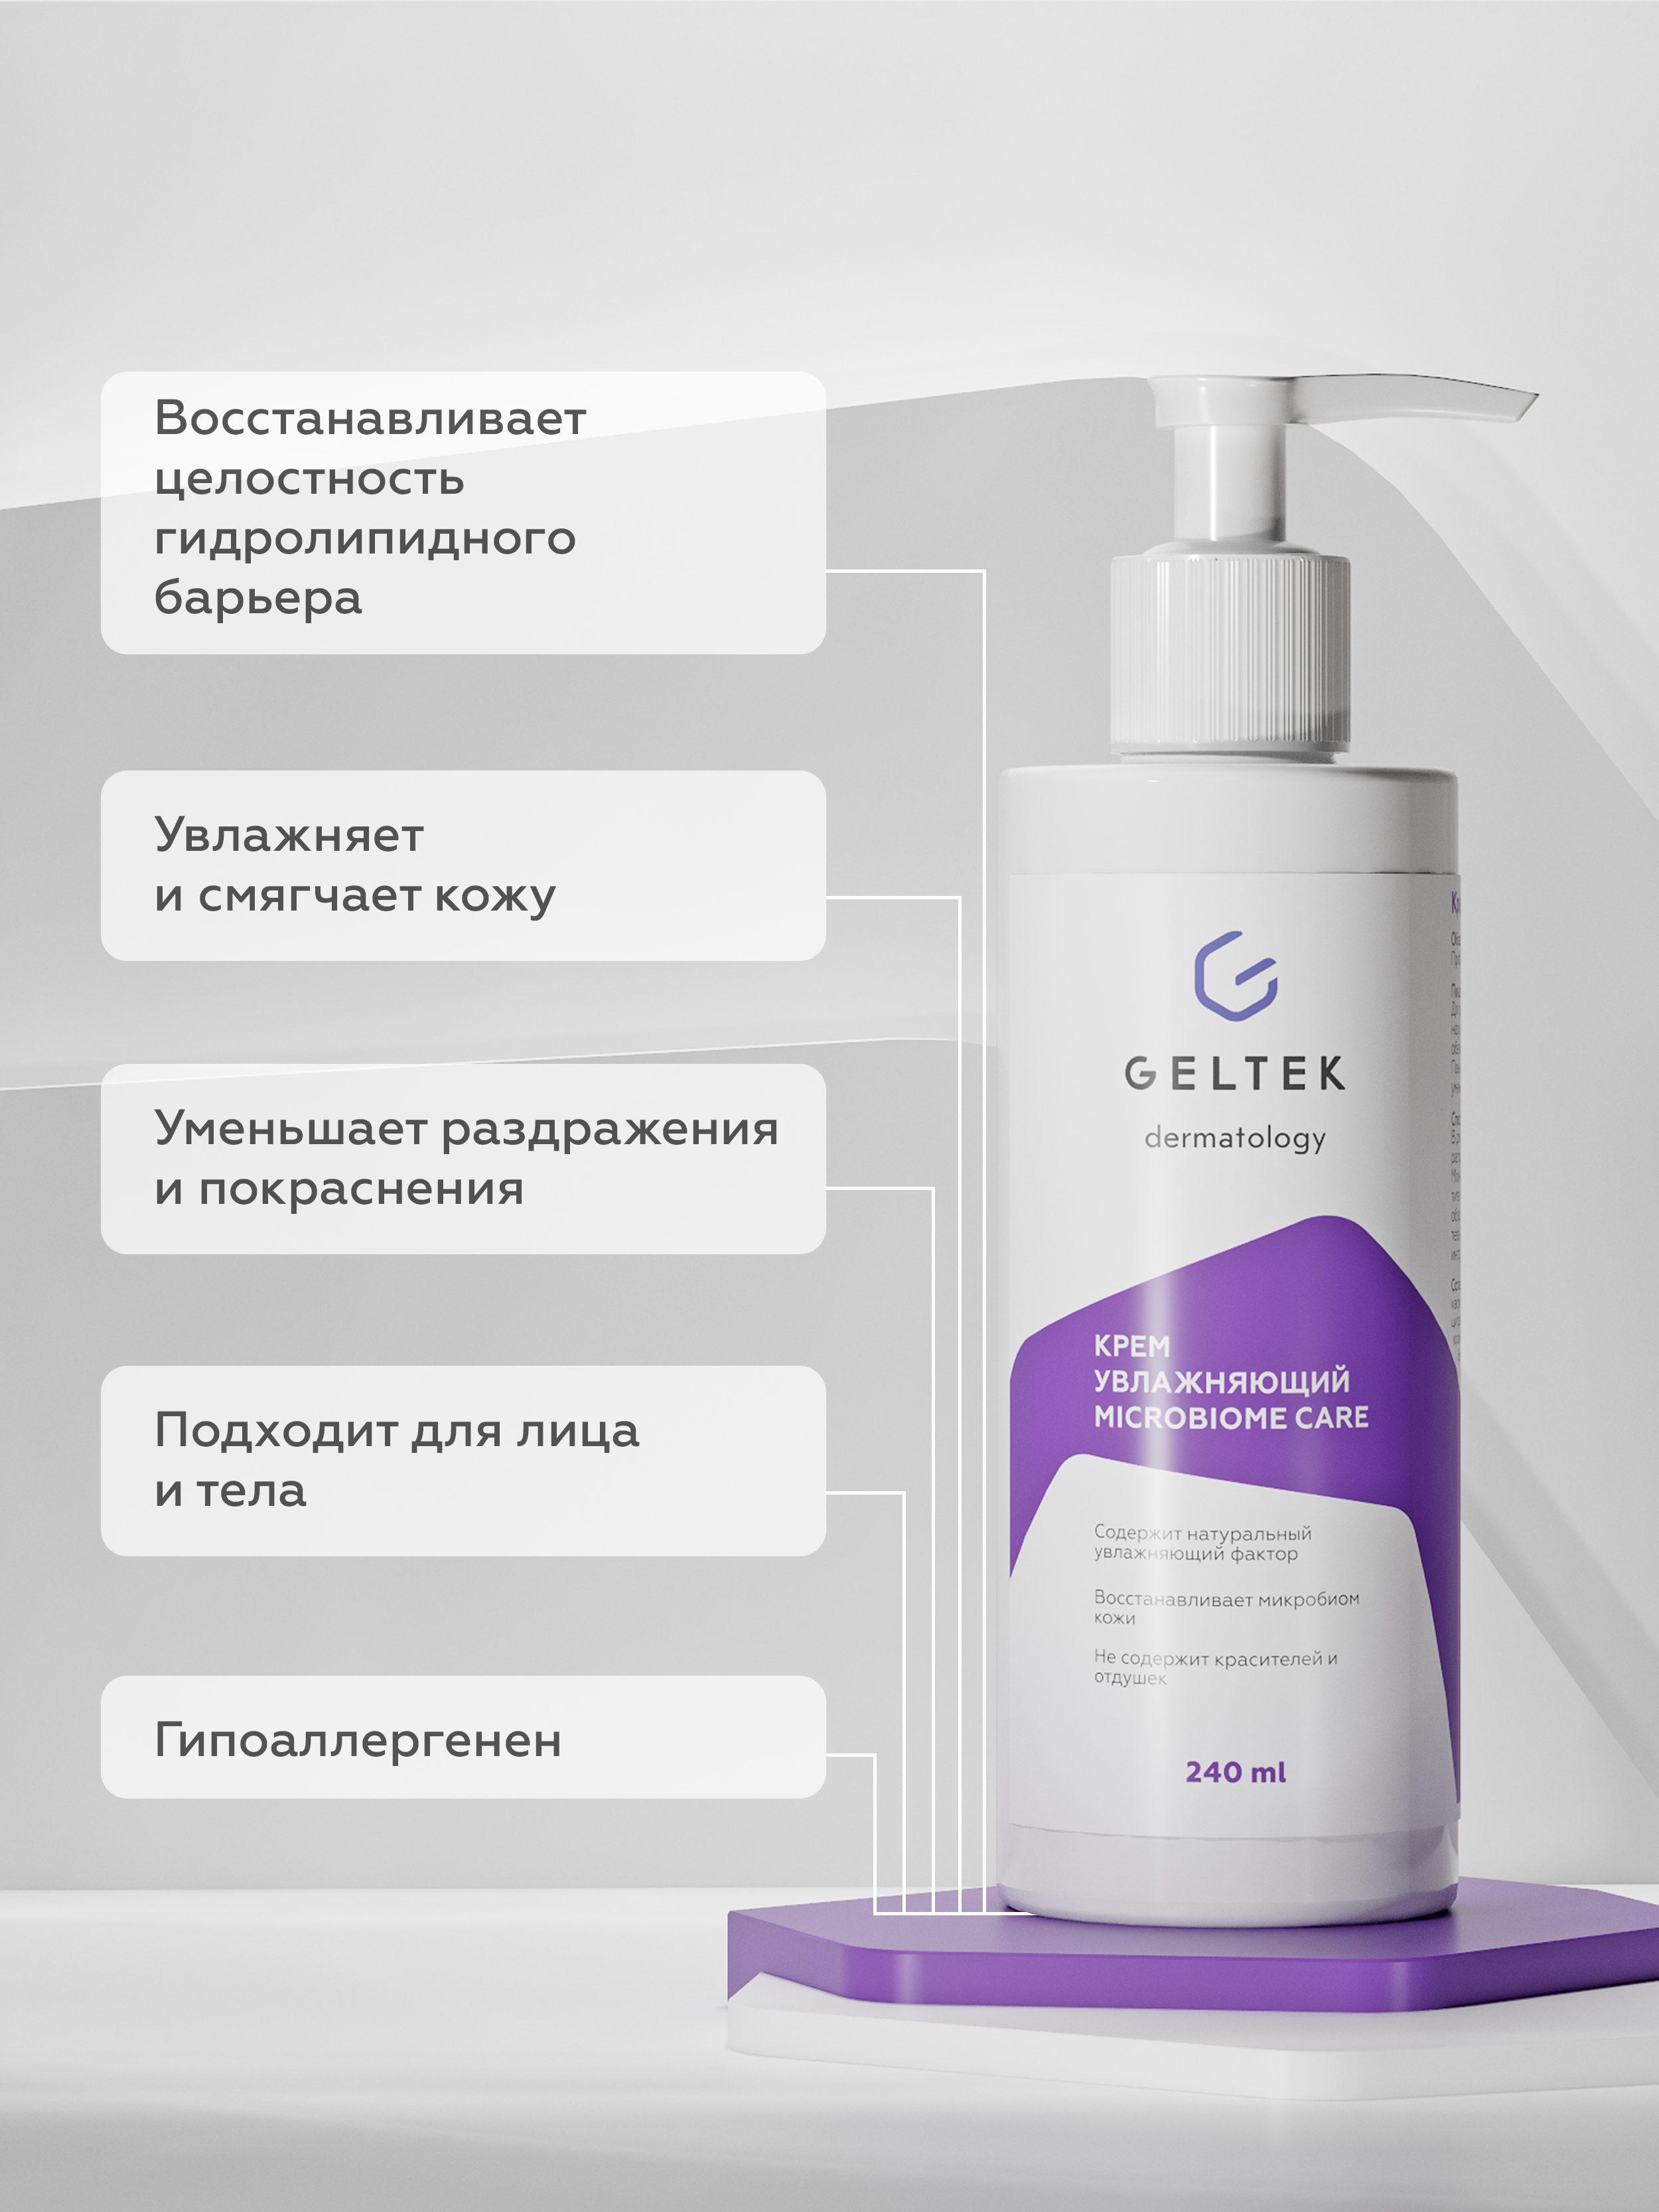 Крем для тела Geltek Microbiome Care увлажняющий 240мл - в интернет-магазине tut-beauty.by